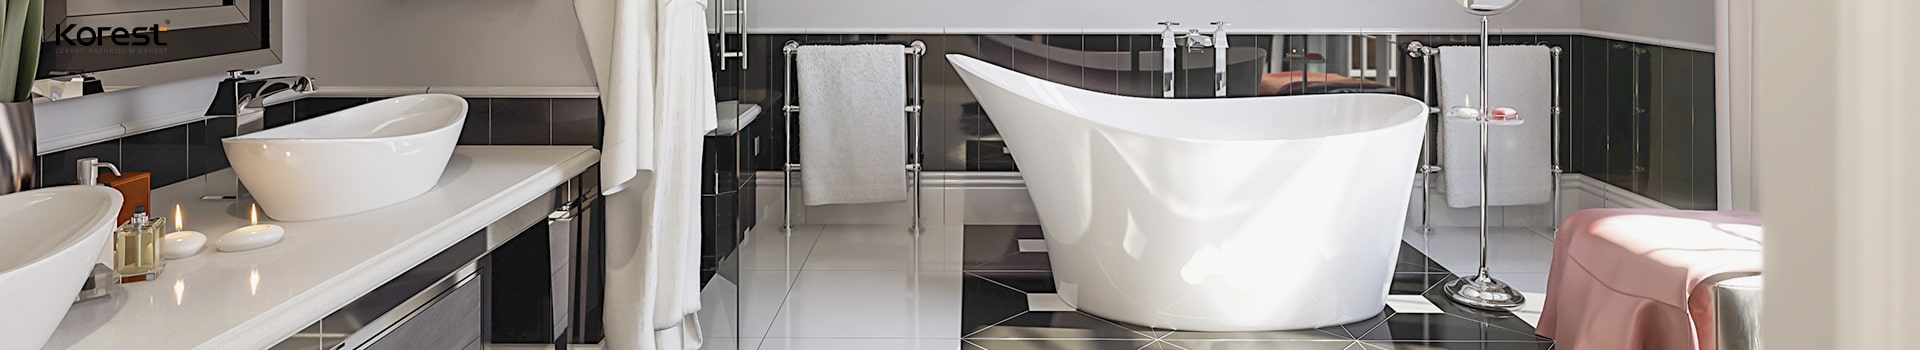 Tổng hợp 10+ mẫu thiết kế nhà vệ sinh 1m2 đẹp, hiện đại